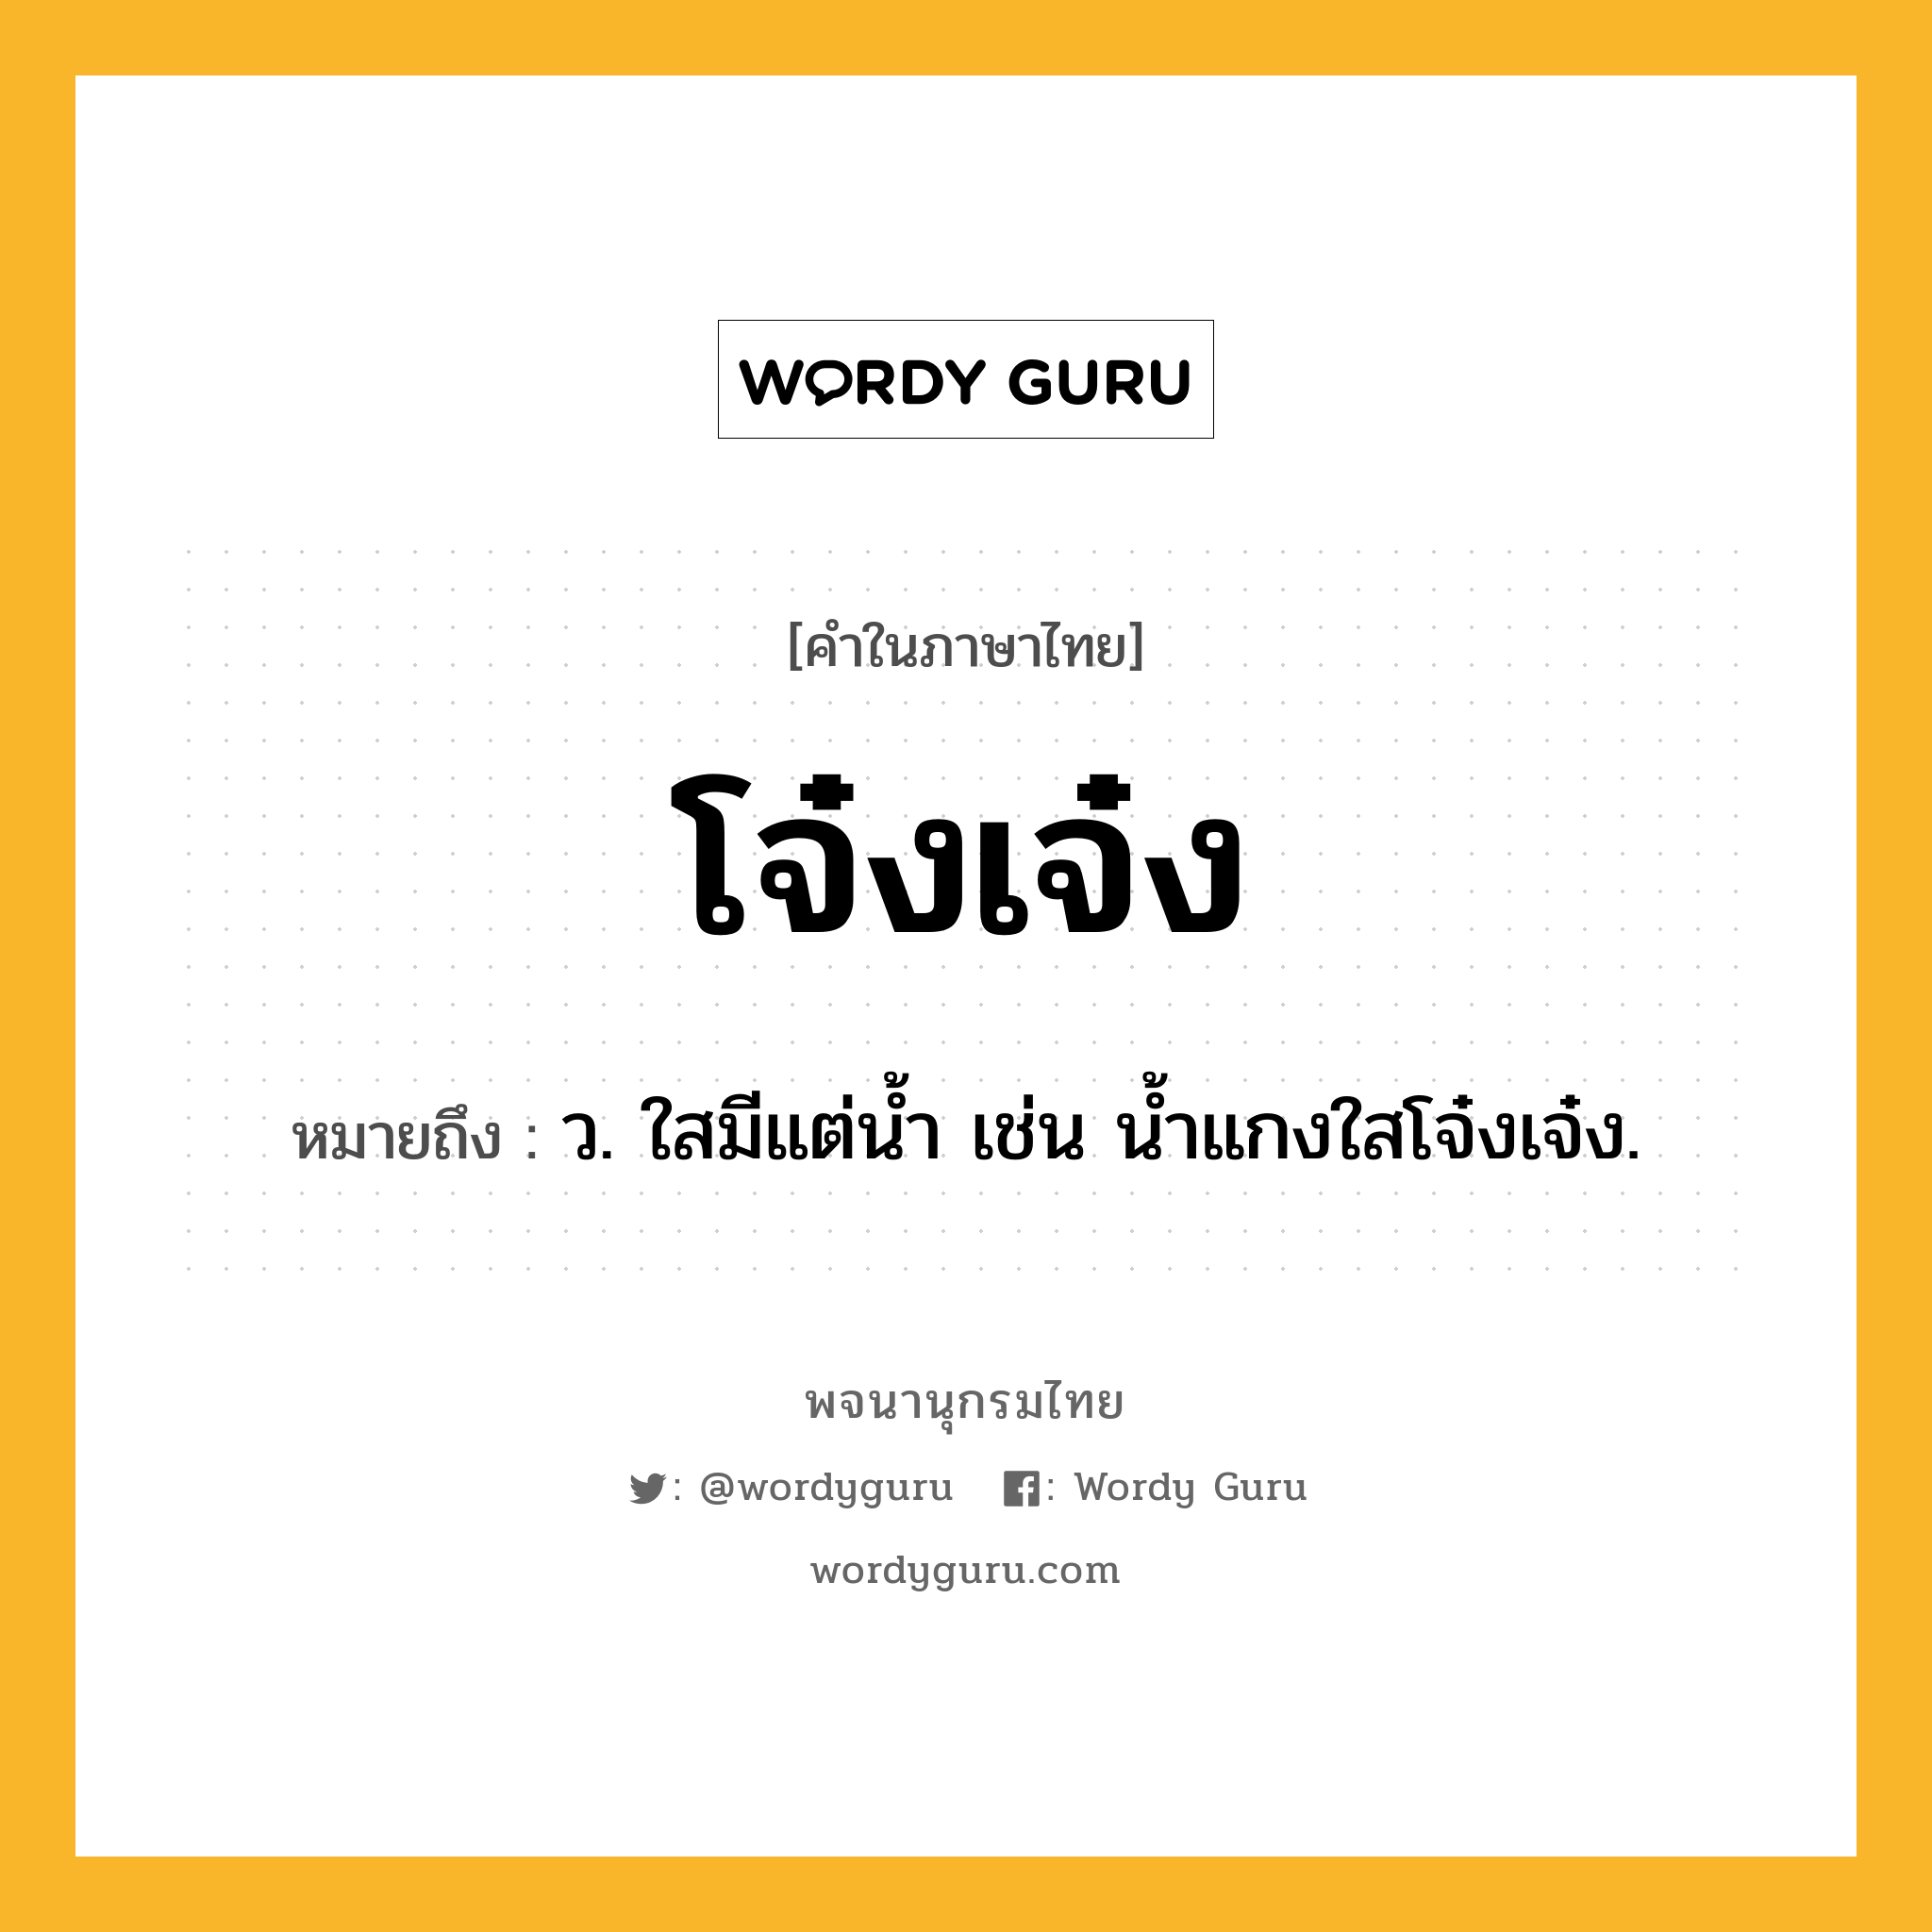 โจ๋งเจ๋ง ความหมาย หมายถึงอะไร?, คำในภาษาไทย โจ๋งเจ๋ง หมายถึง ว. ใสมีแต่นํ้า เช่น น้ำแกงใสโจ๋งเจ๋ง.